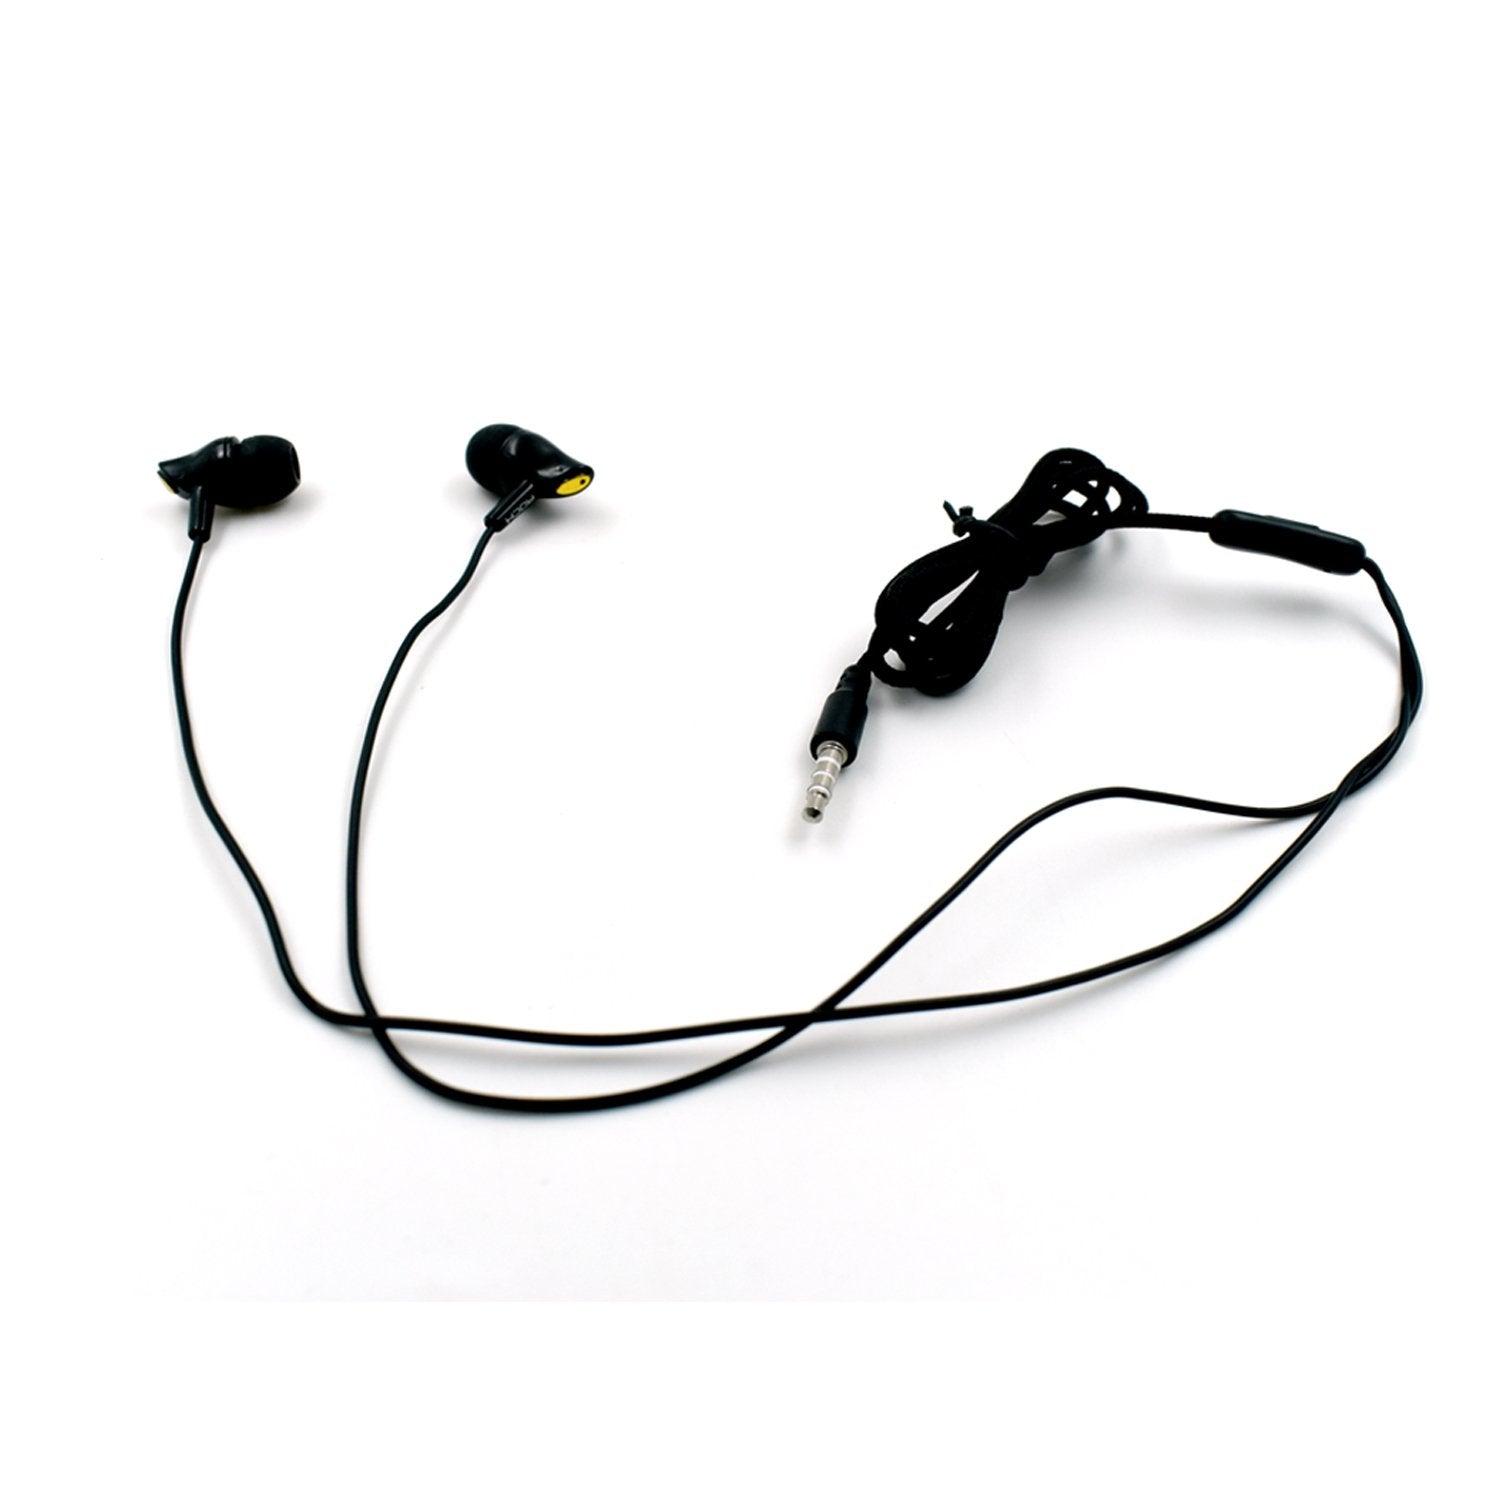 6034 Headphone Isolatinc headphones with Hands-free Control